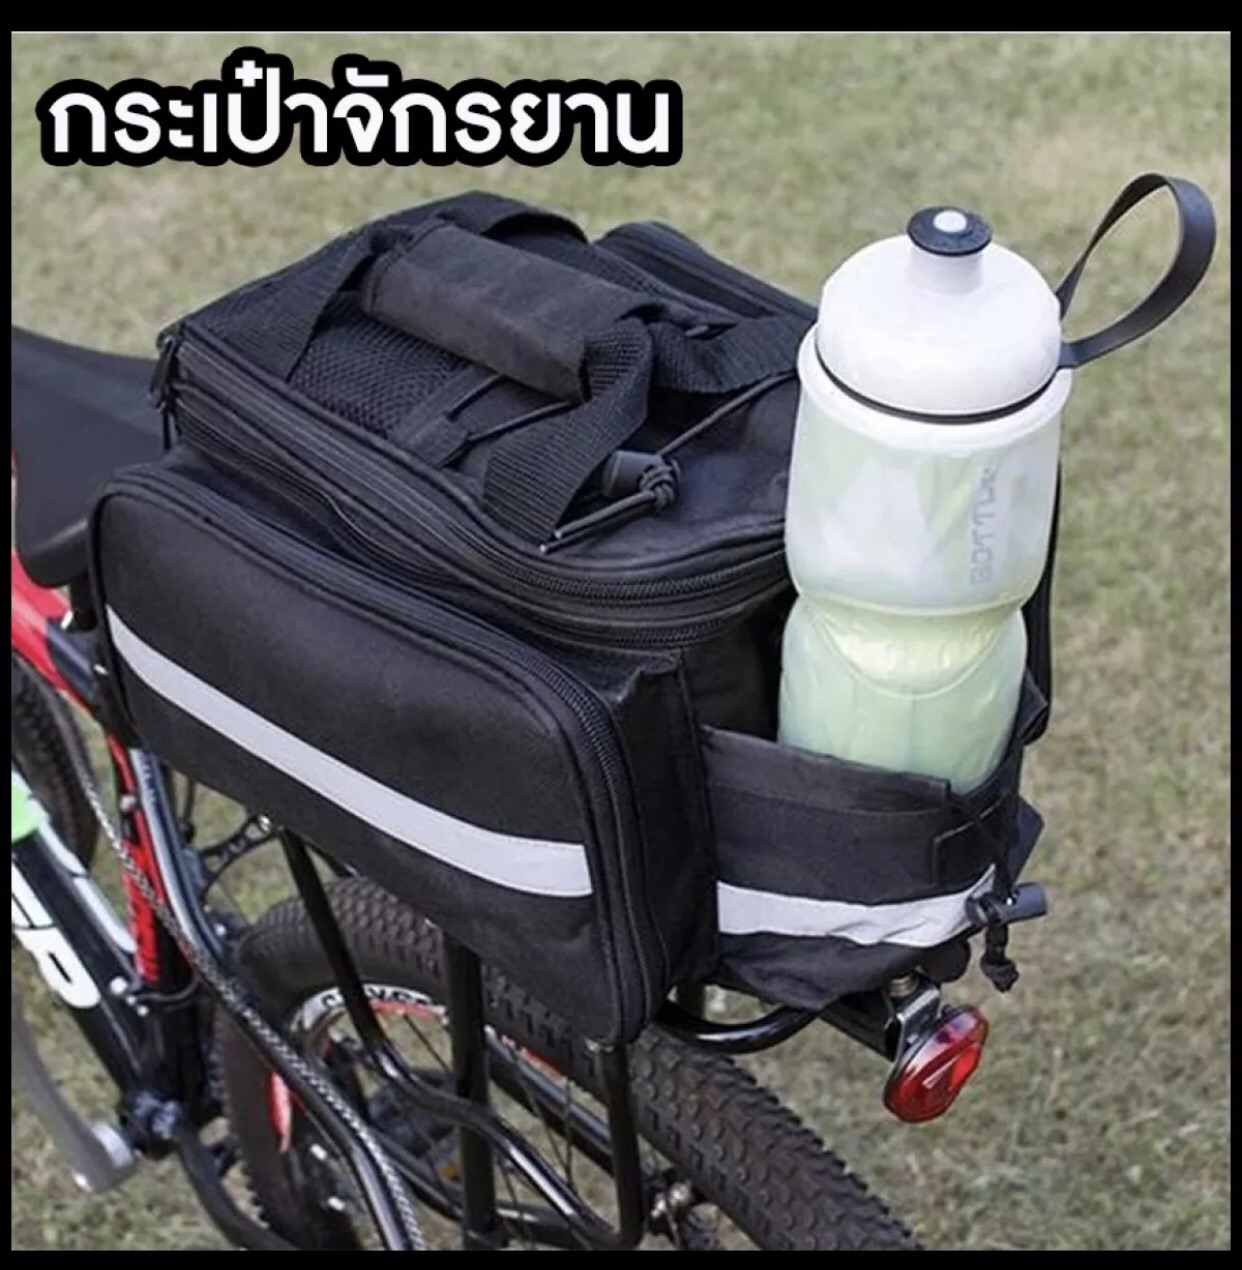 กระเป๋าติดจักรยาน กระเป๋าวางท้ายจักรยาน กระเป๋าติดท้ายจักรยาน กระเป๋าติดแร็คท้ายจักรยาน